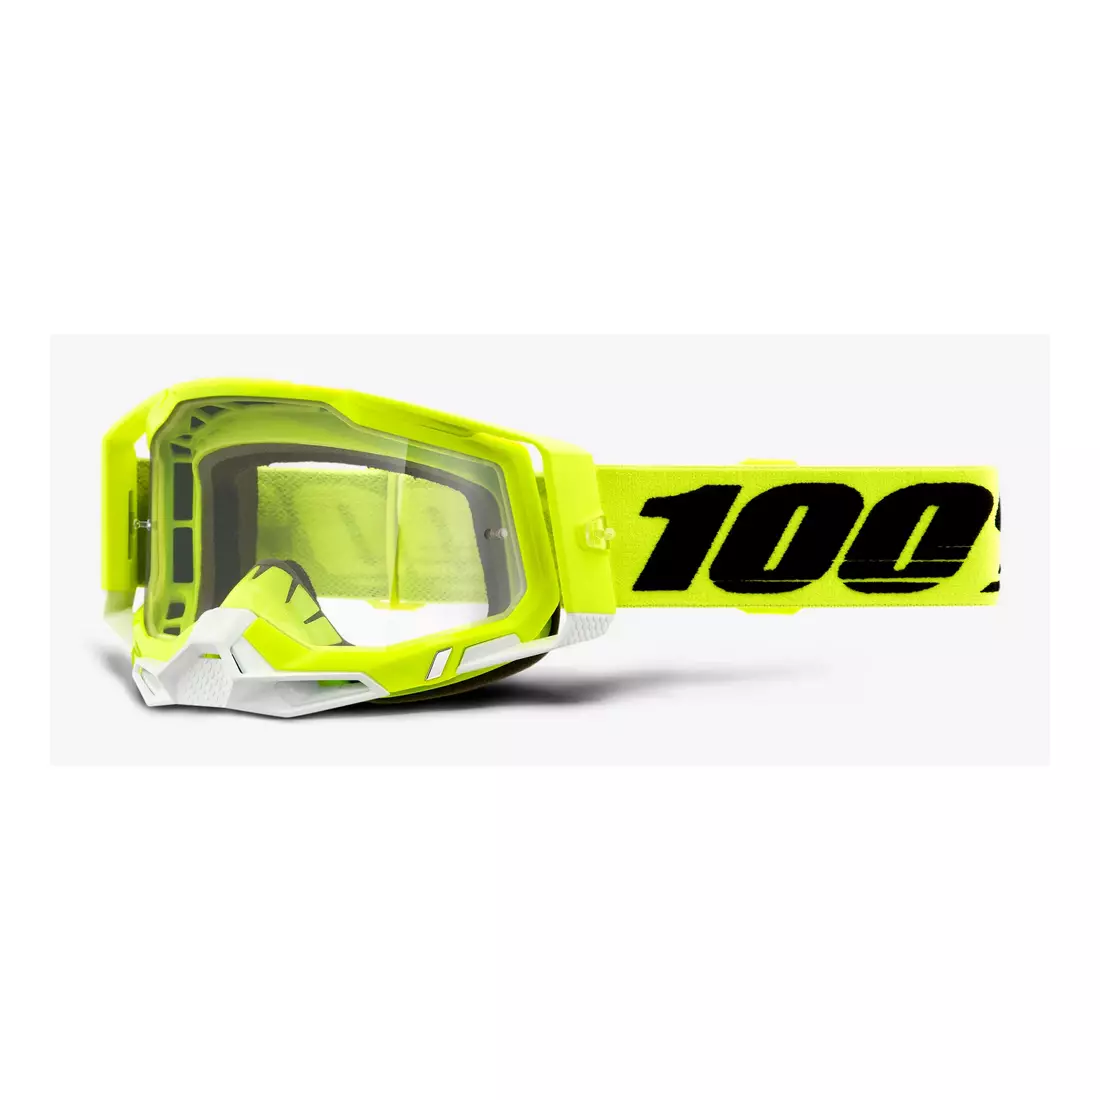 100% RACECRAFT 2 kerékpáros szemüveg (piros tükrös Anti-Fog lencse, LT 38%+/-5% + átlátszó Anti-Fog lencse, LT 88%-92% + 10 fedő) attack yellow STO-50121-251-04